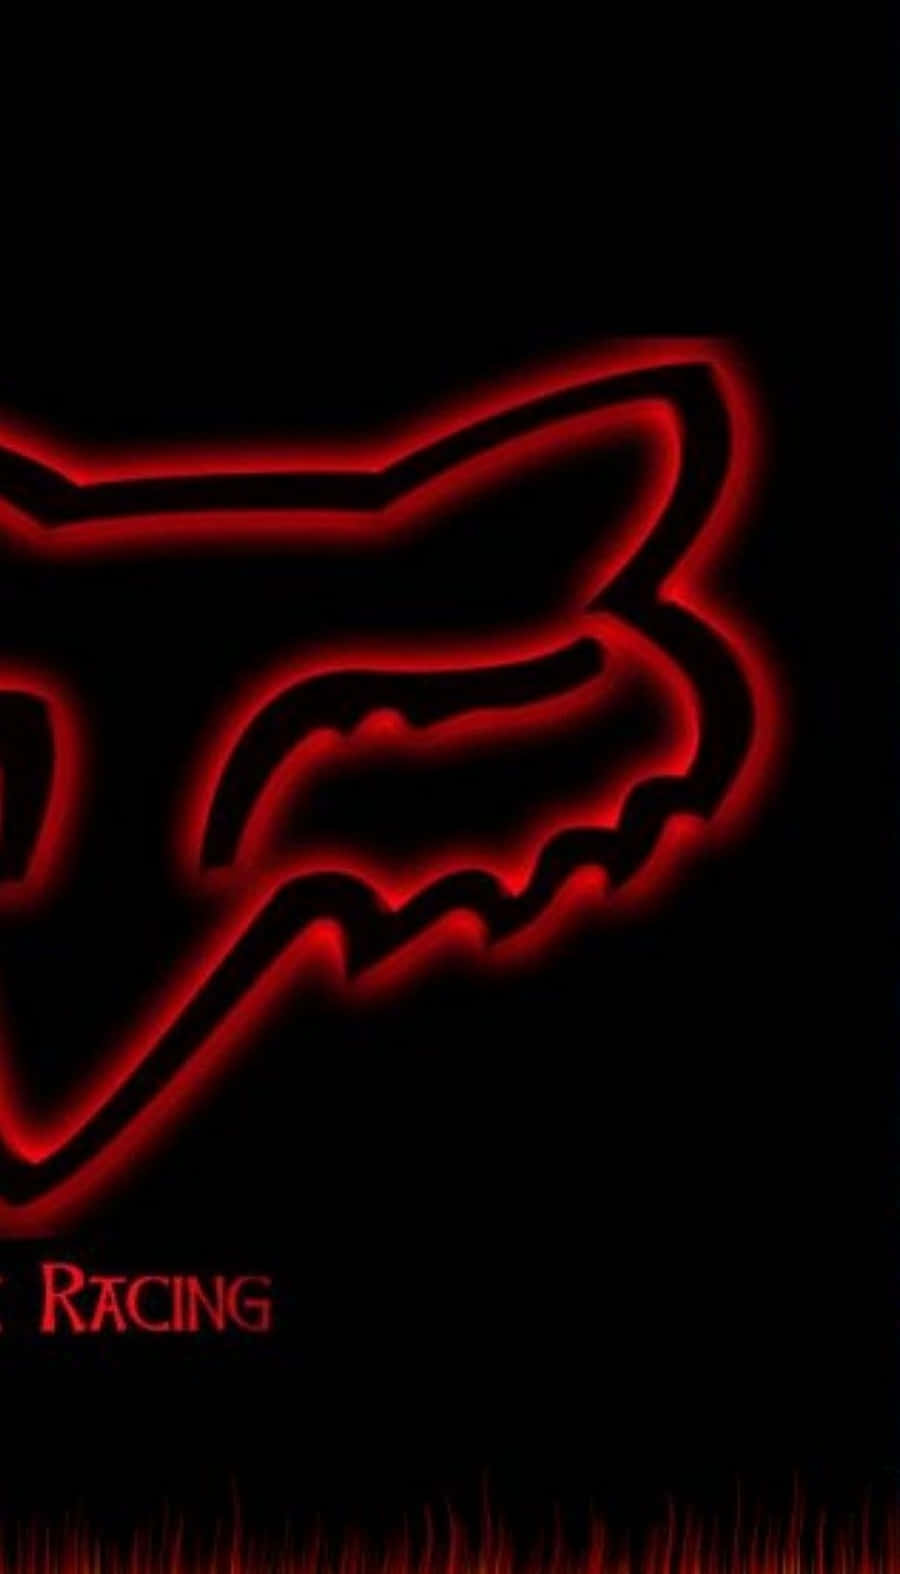 Rød fox racing logo på sort baggrund Wallpaper